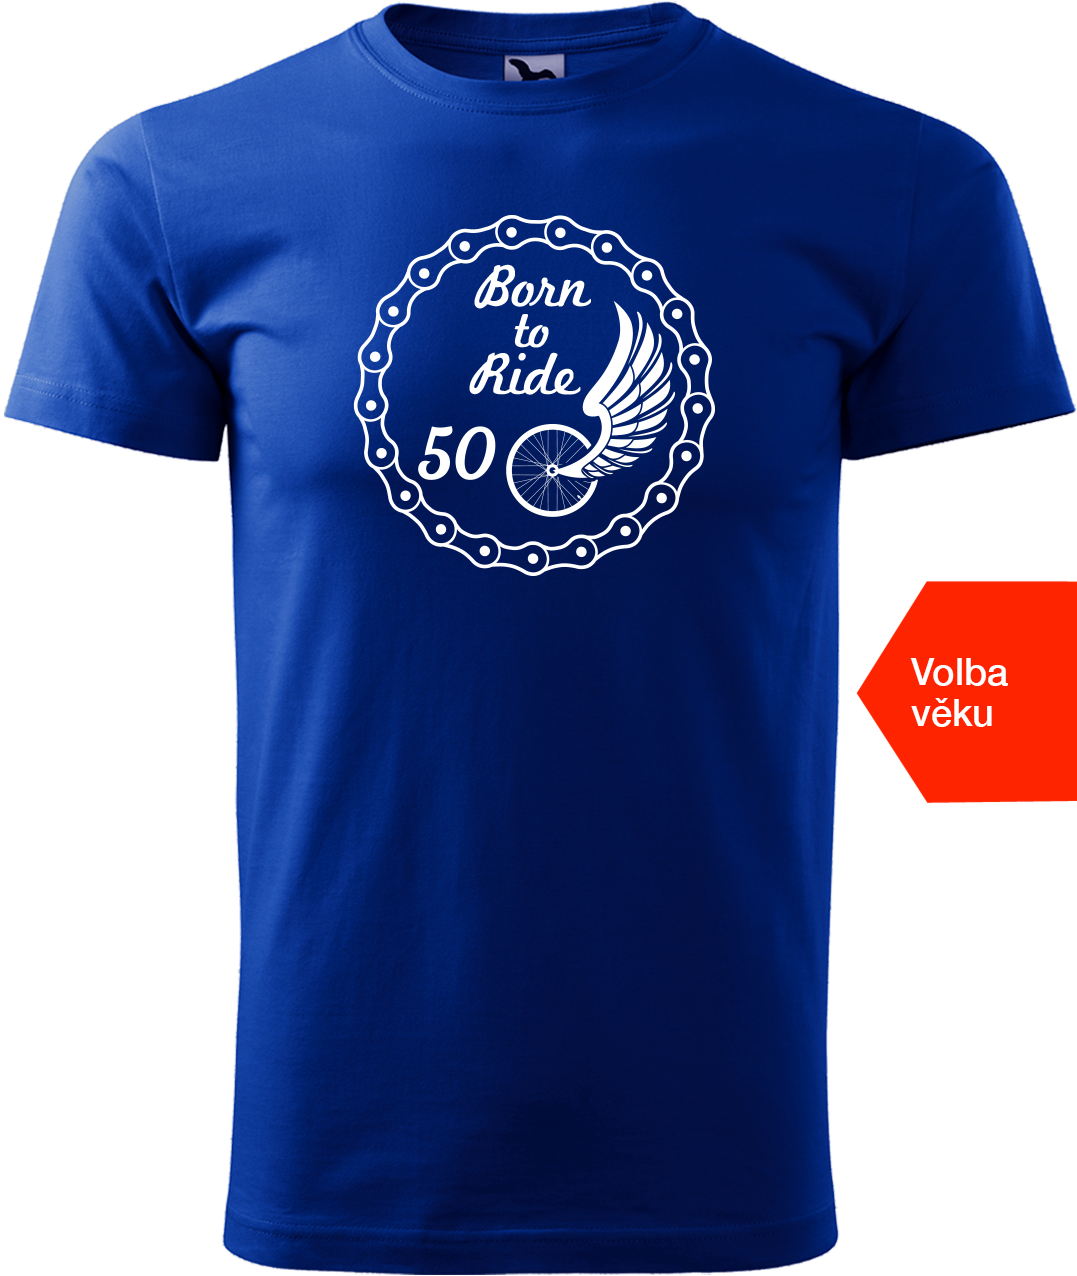 Pánské tričko pro cyklistu s věkem - Born to Ride (wings) Velikost: M, Barva: Královská modrá (05)